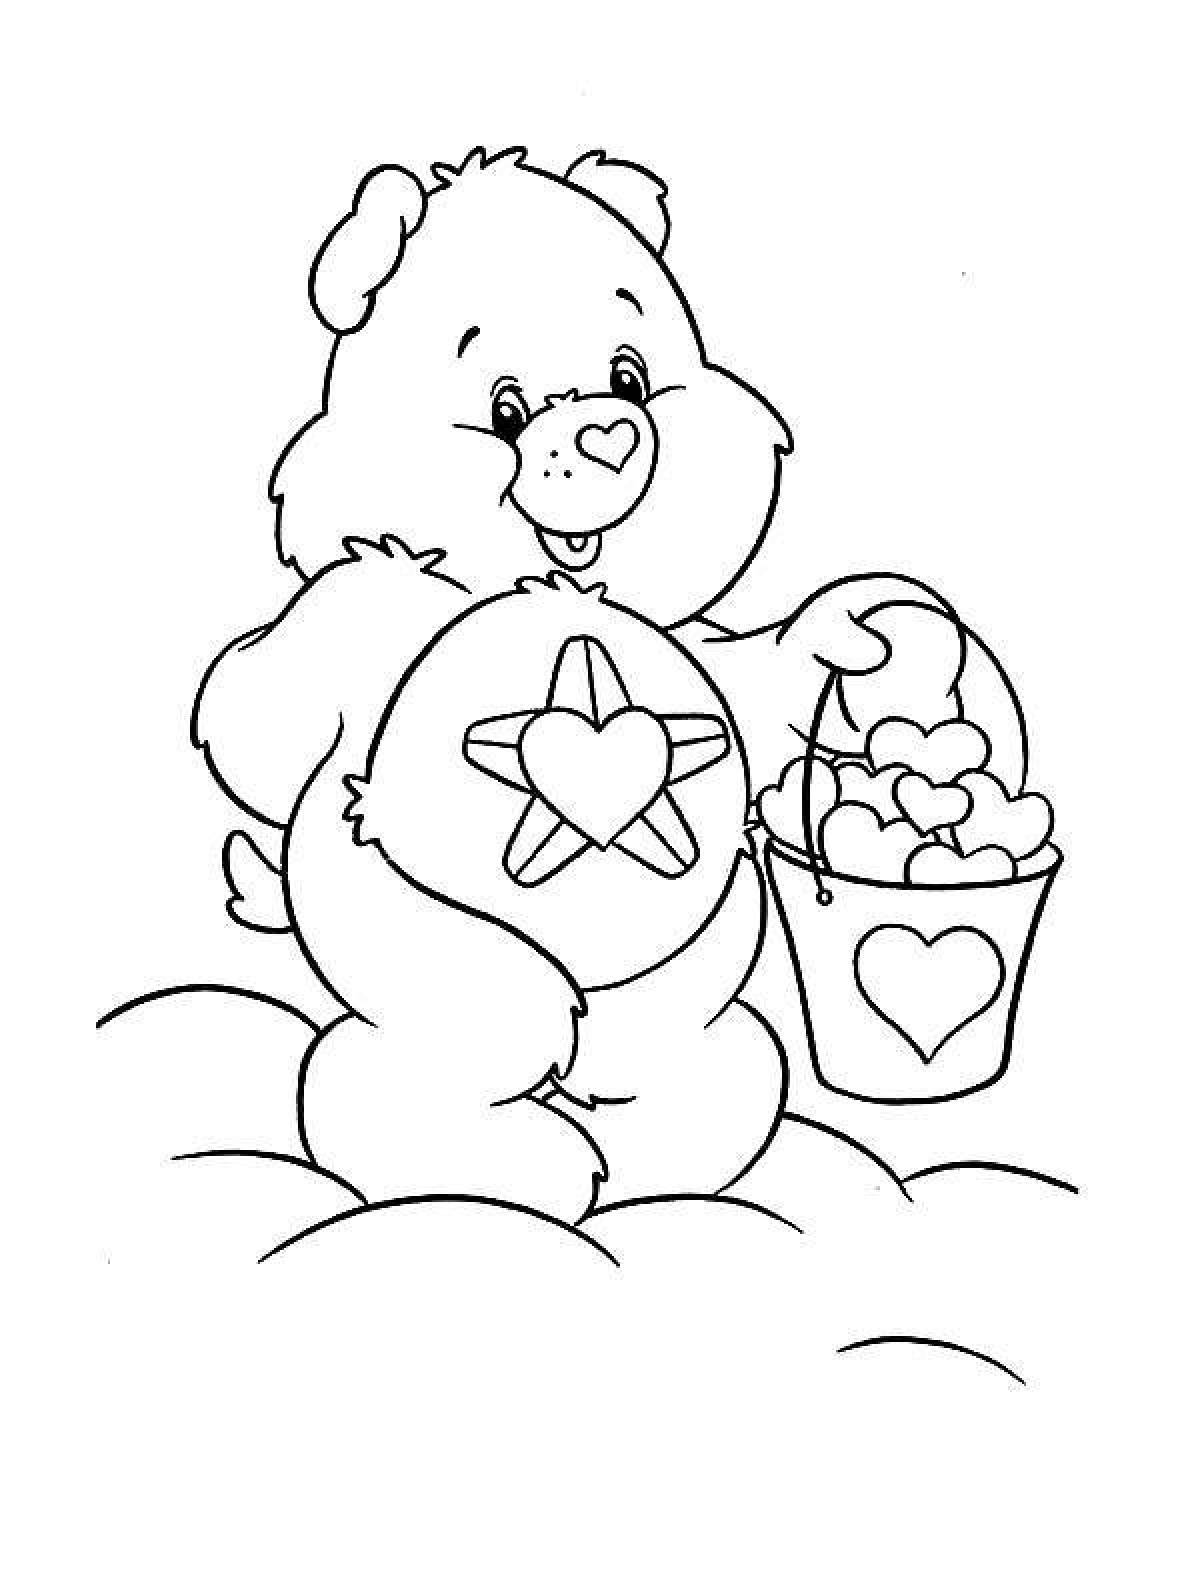 Coloring book smiling cute bear